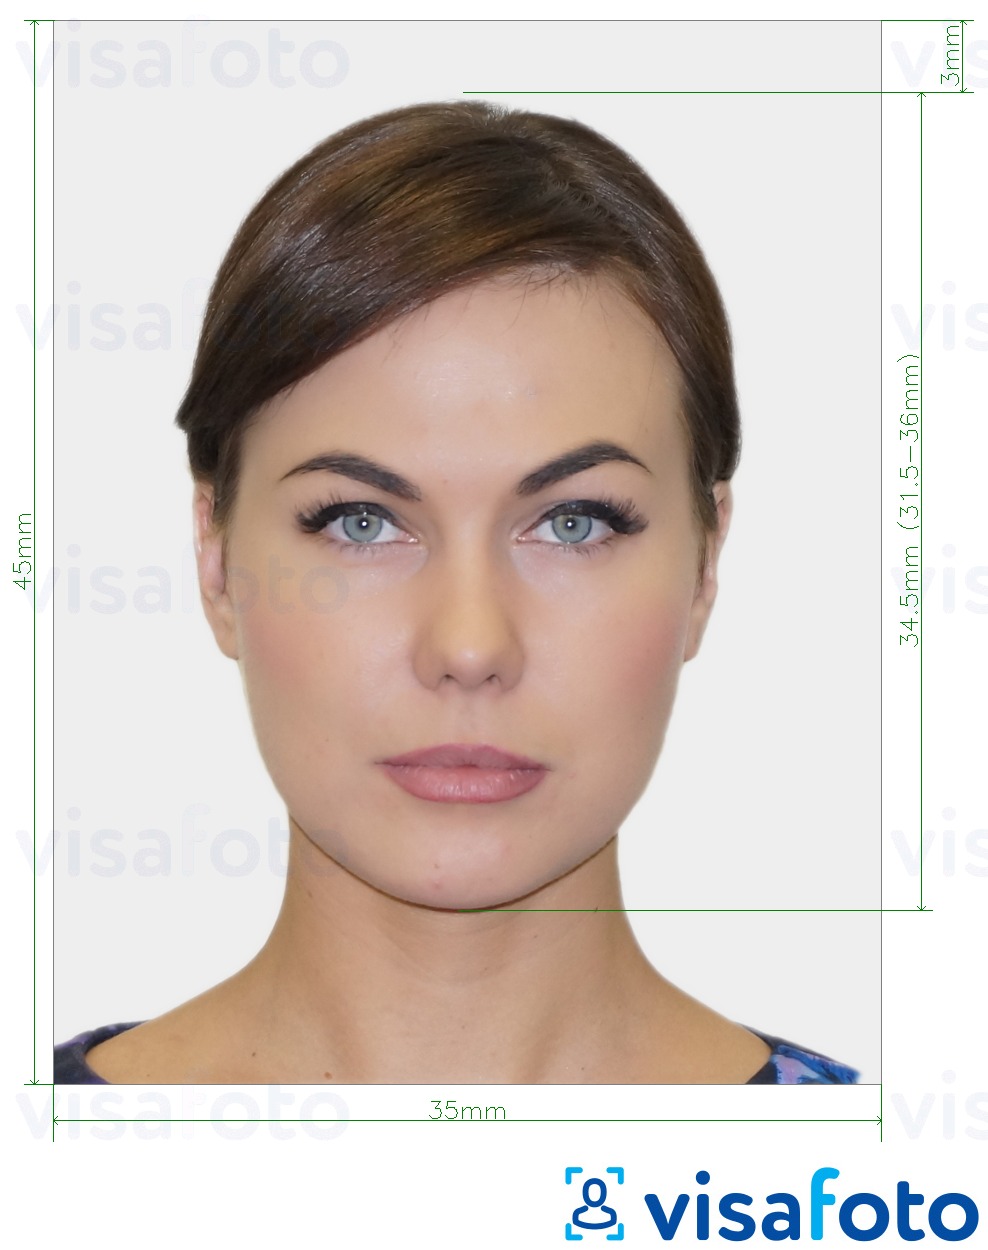 Exemple de foto per a Visa de Croàcia 35x45 mm (3,5x4,5 cm) amb la mida exacta especificada